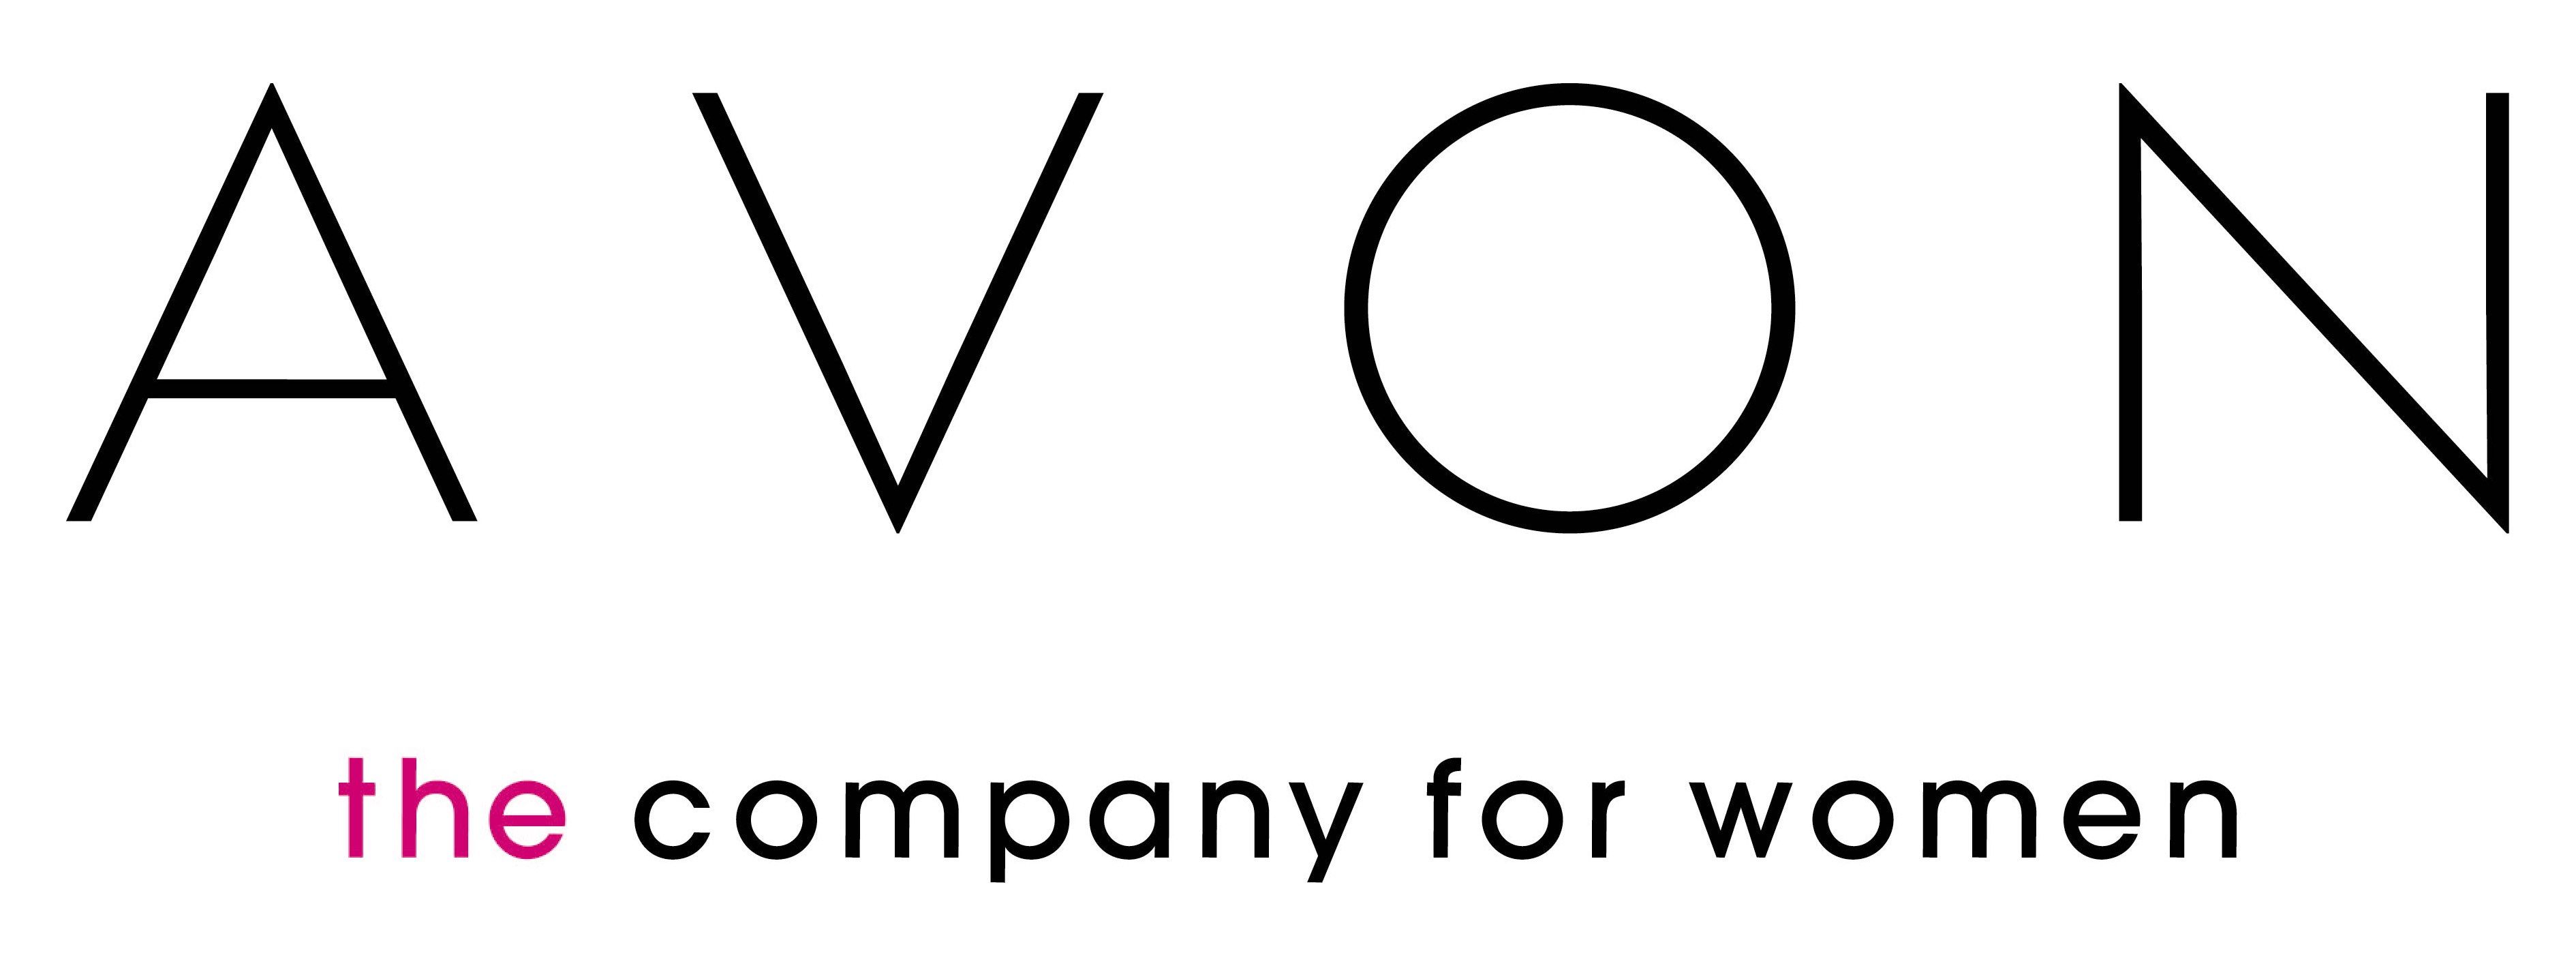 Image Avon Logo Wallpaper Databasemember